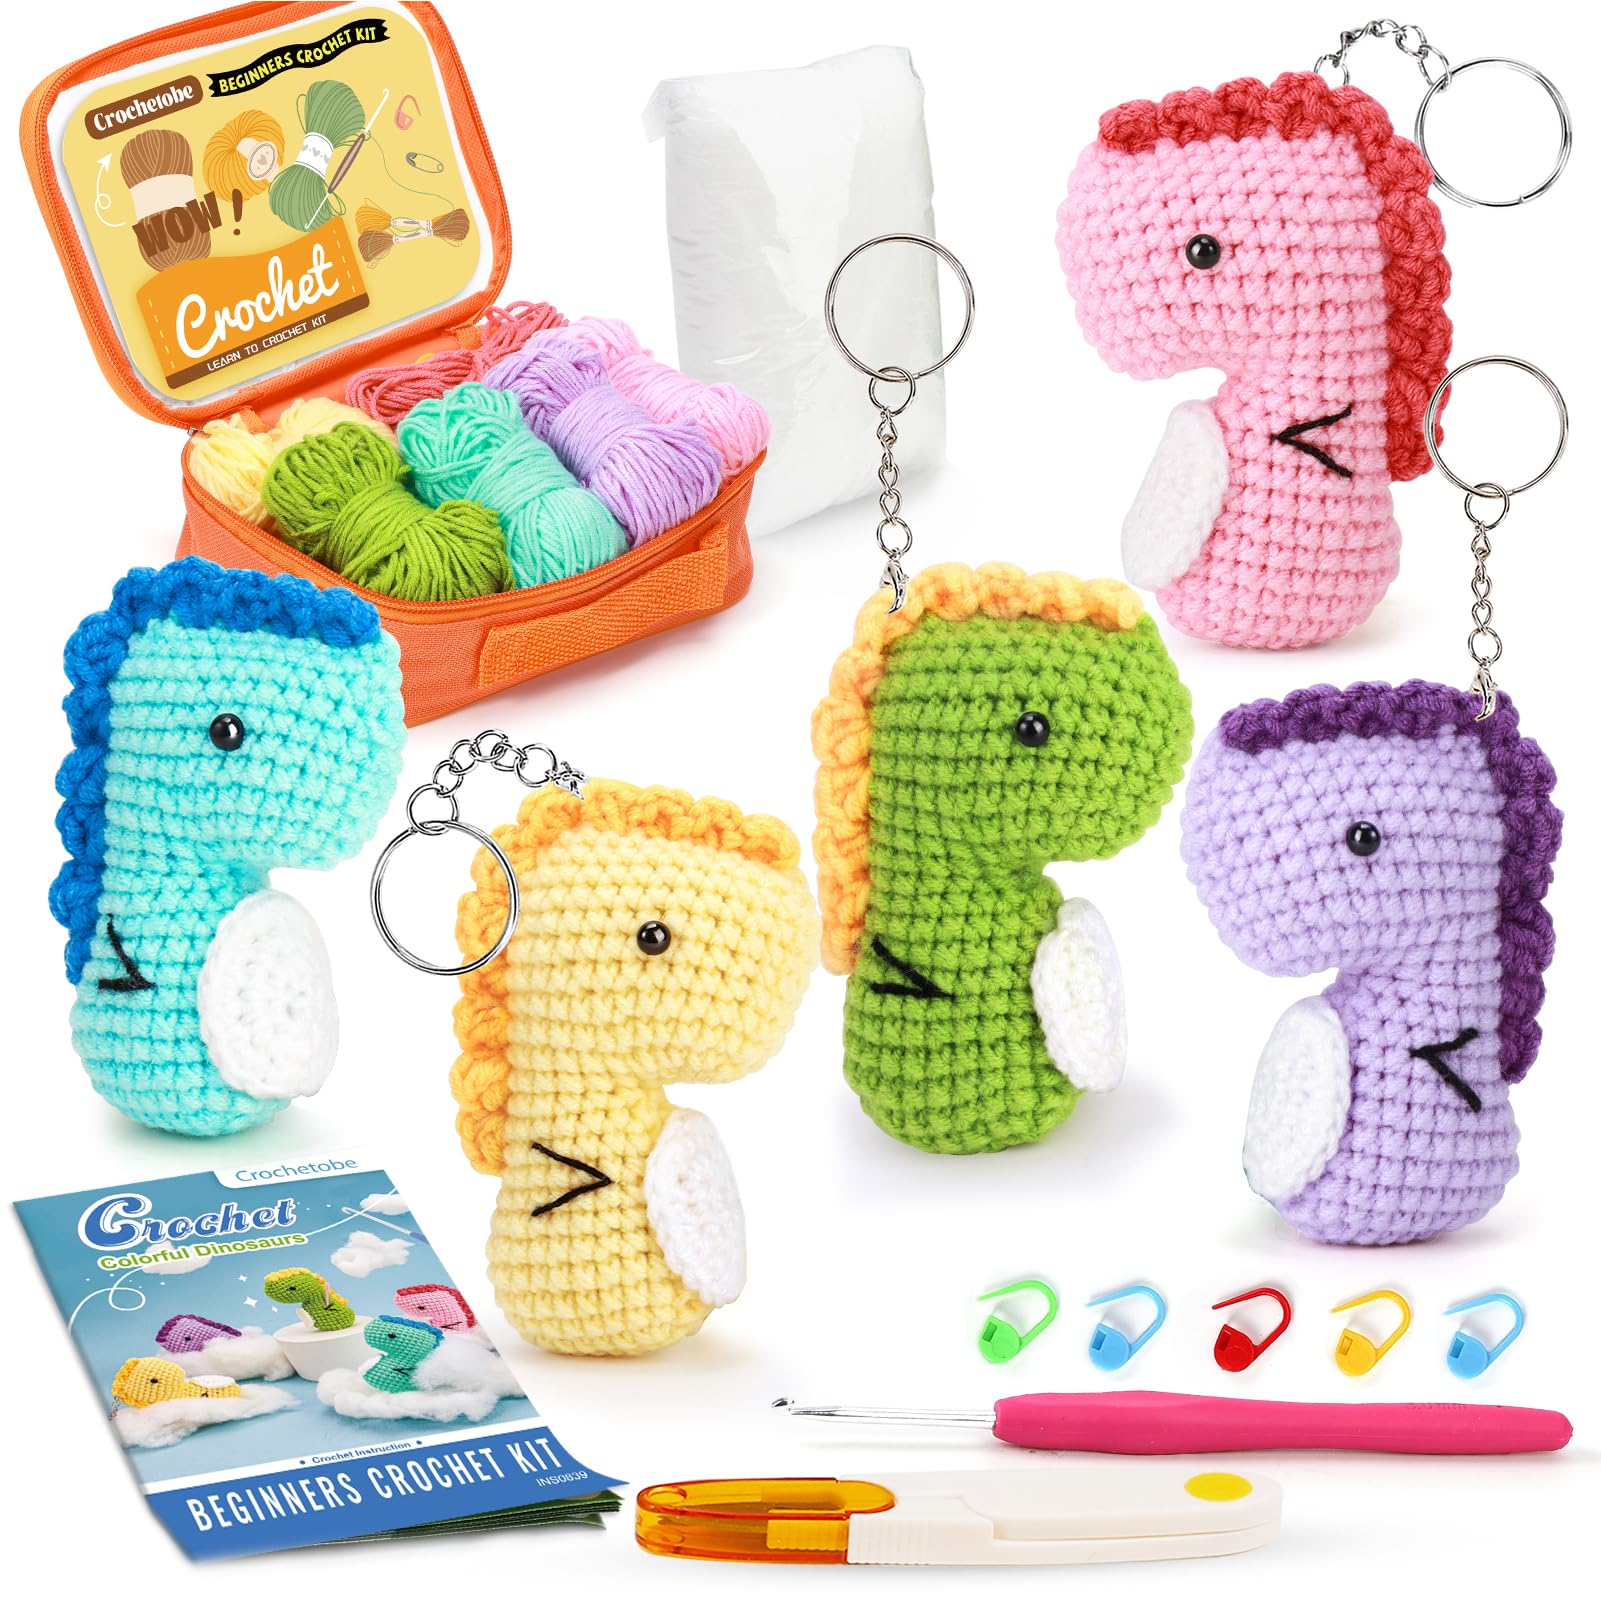 Crochetobe Beginner Crochet Kit for Adults - 4 PCS Mushroom Crochet Kit,  Complete Crochet Starter Kit with Detailed Tutorials, Crochet Kit for